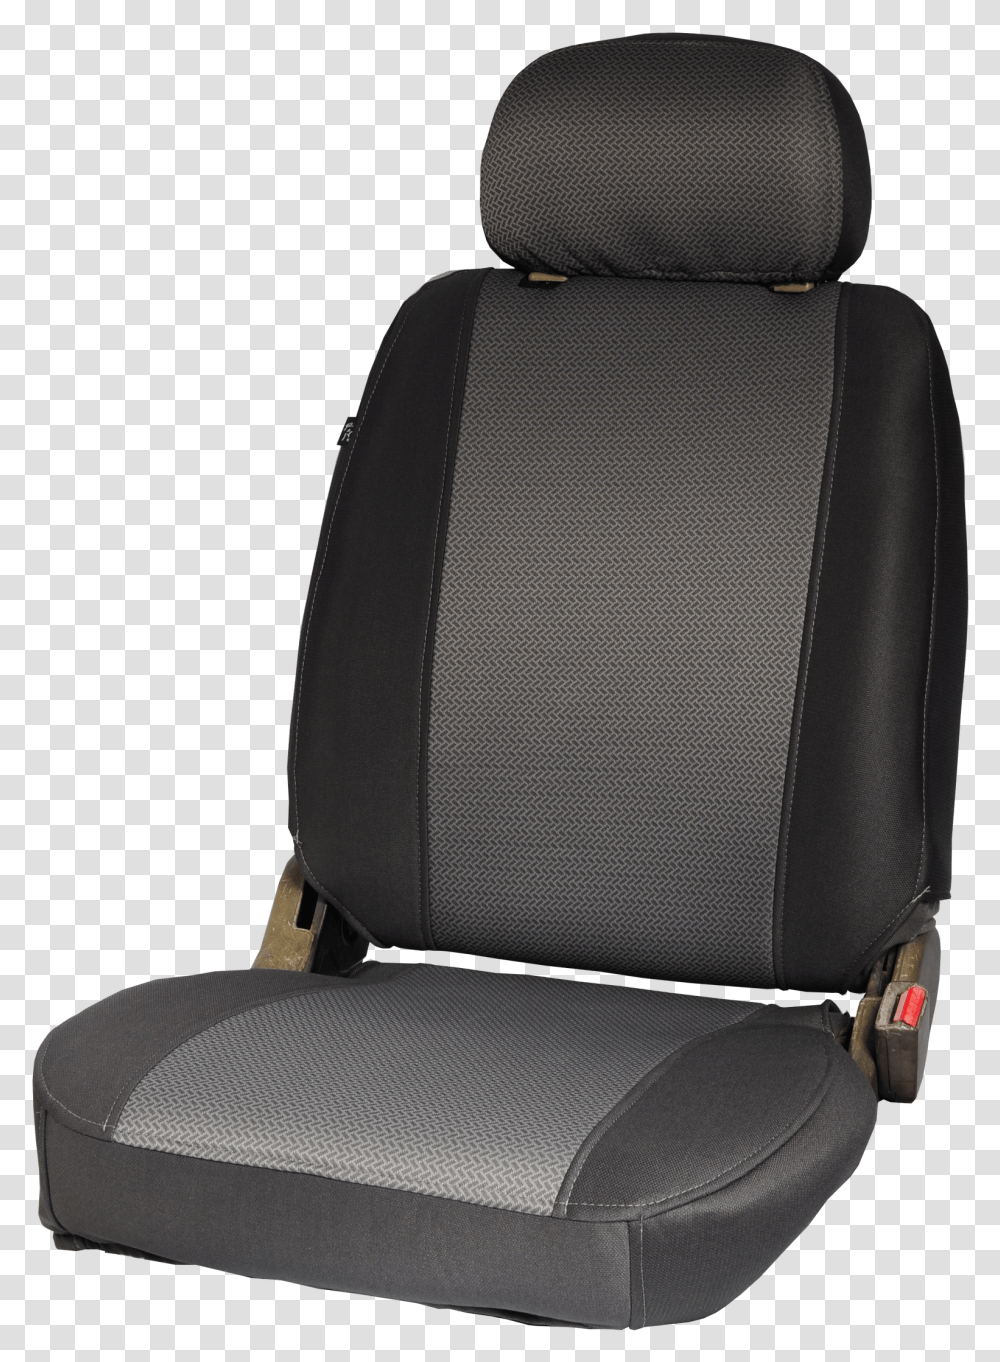 Sillones De Auto, Cushion, Chair, Furniture, Headrest Transparent Png